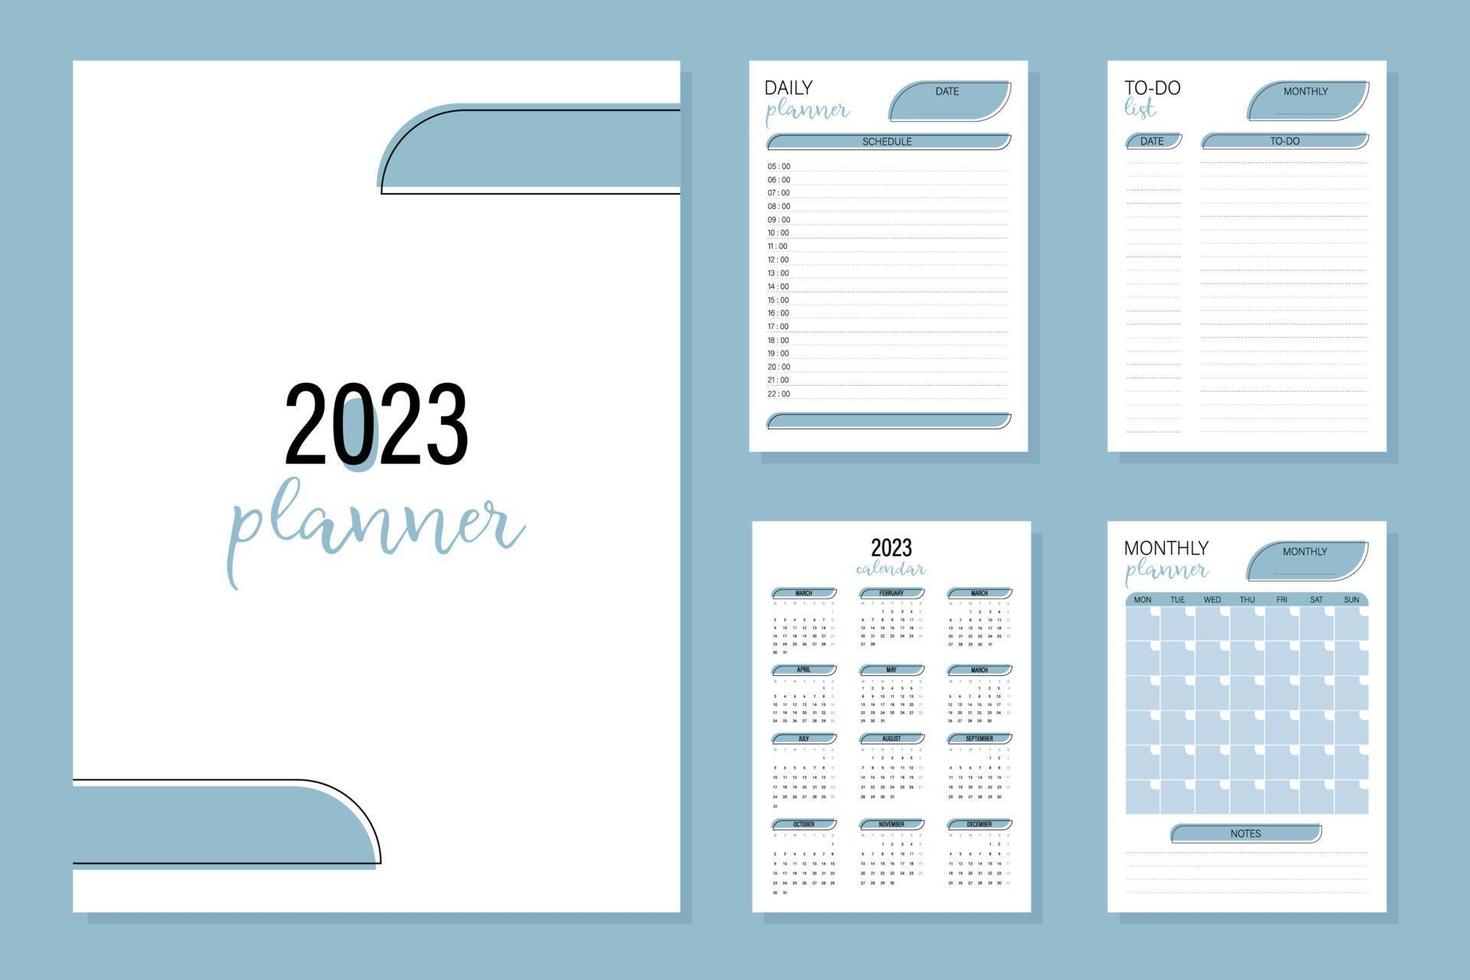 Planner calendar 2023 vector illustration